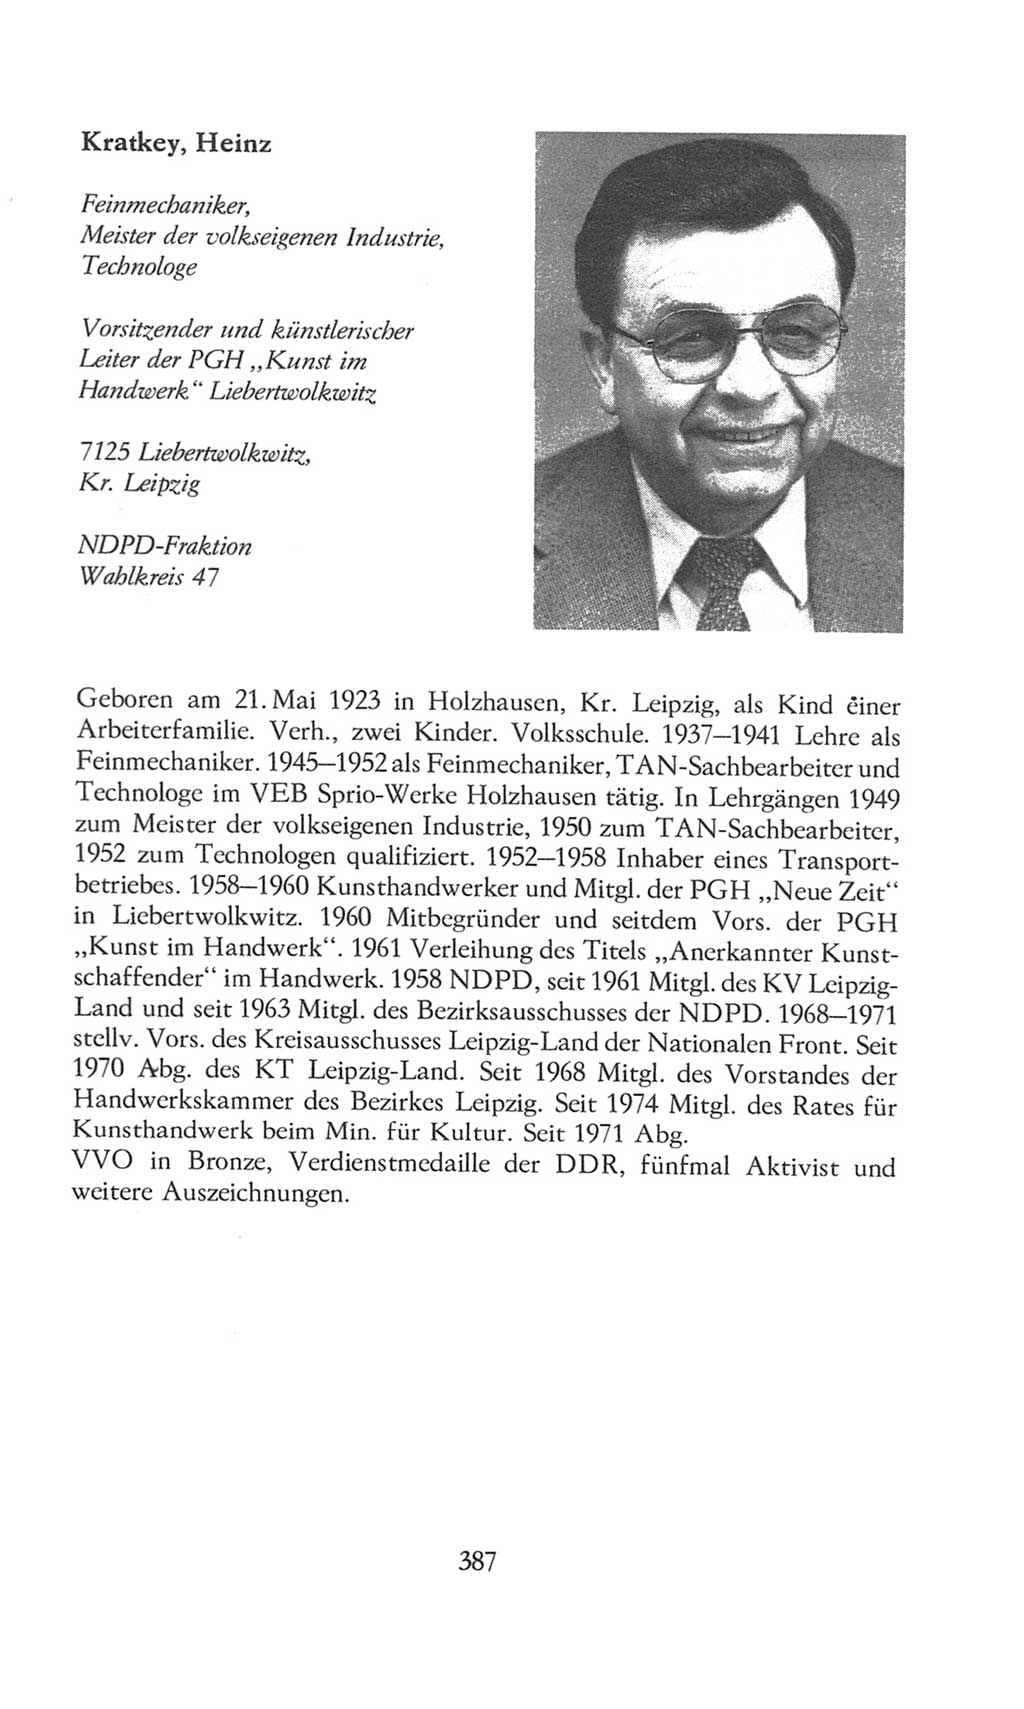 Volkskammer (VK) der Deutschen Demokratischen Republik (DDR), 8. Wahlperiode 1981-1986, Seite 387 (VK. DDR 8. WP. 1981-1986, S. 387)